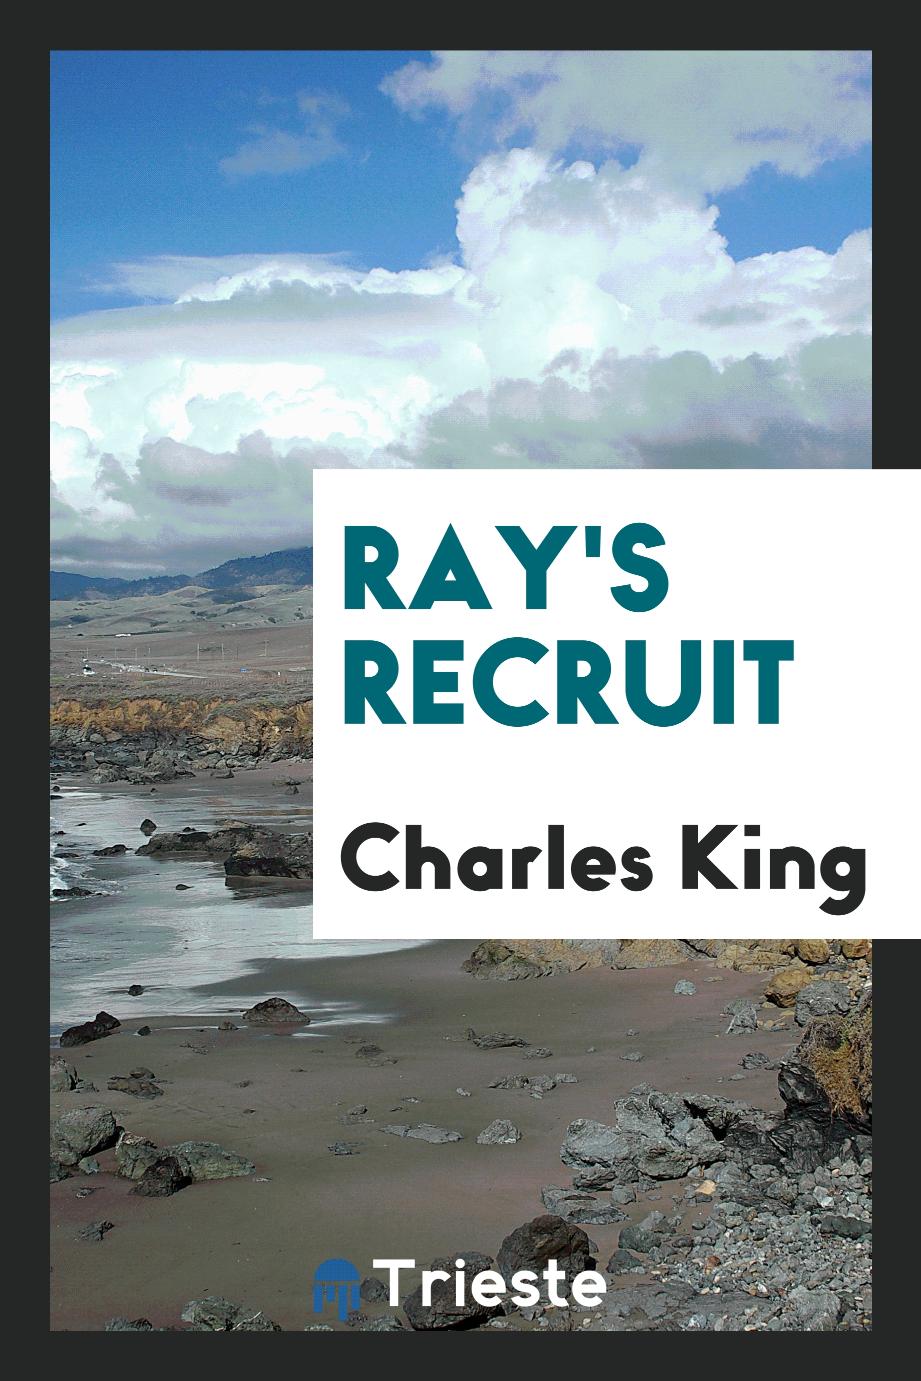 Ray's recruit